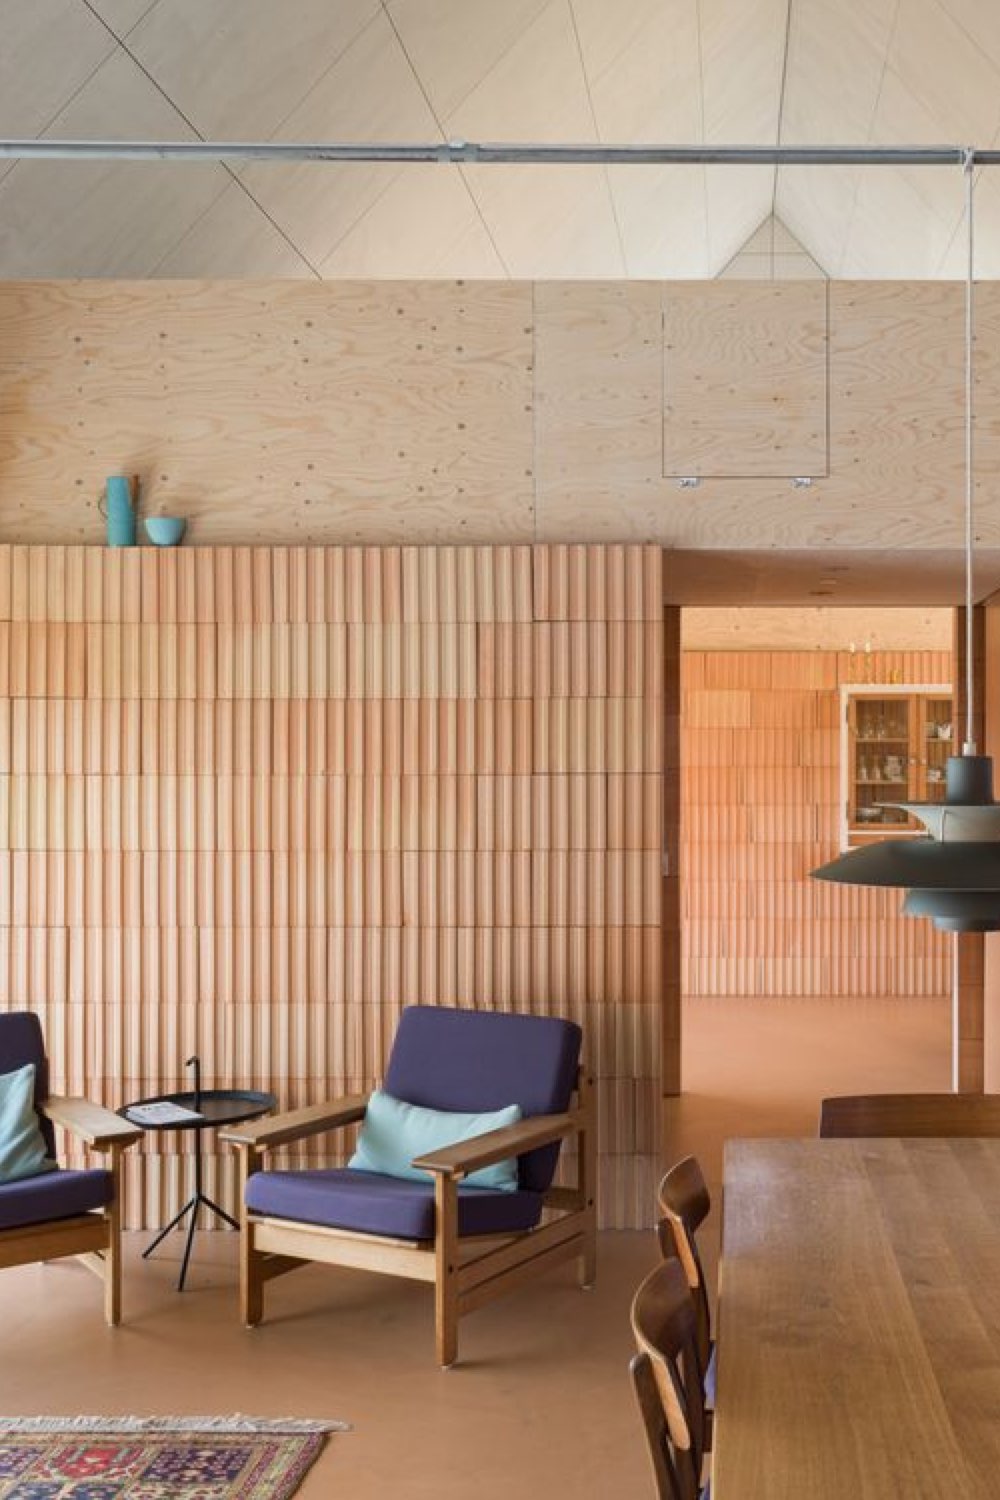 caracteristique decoration modern design salon salle à manger esprit vintage mur en bois texturé fauteuil rétro bleu